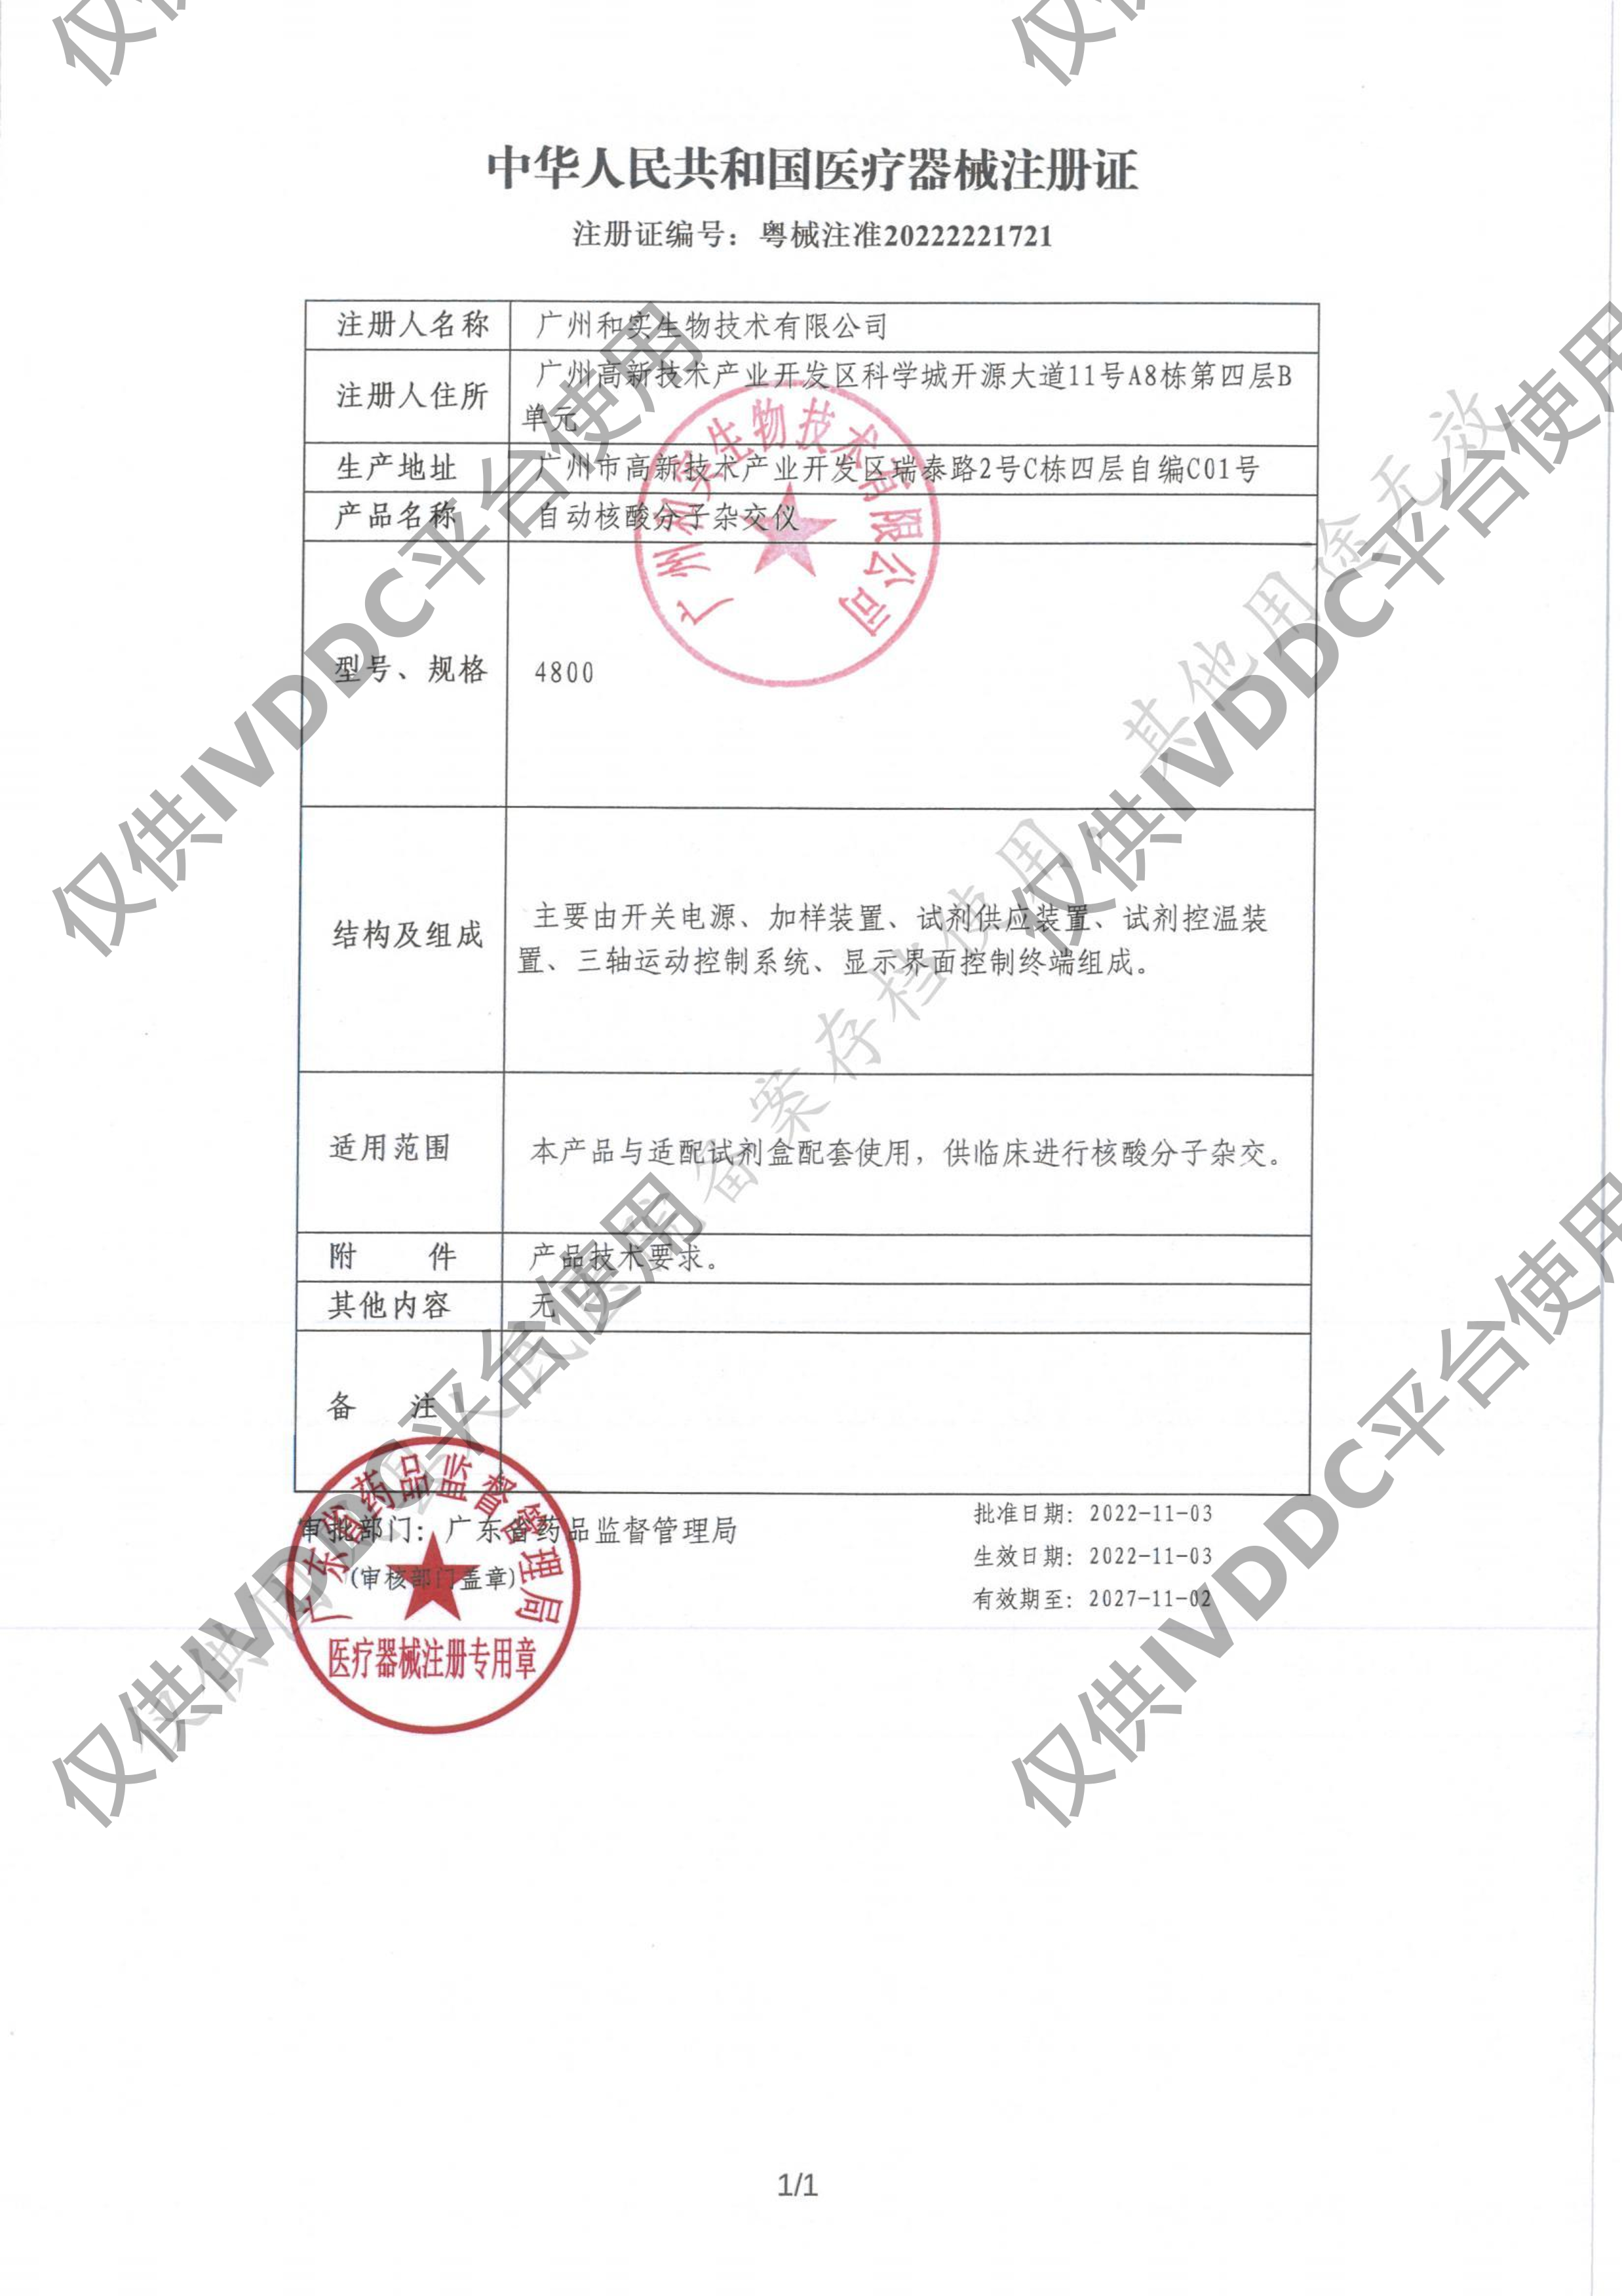 【广州和实】 自动核酸分子杂交仪 4800注册证